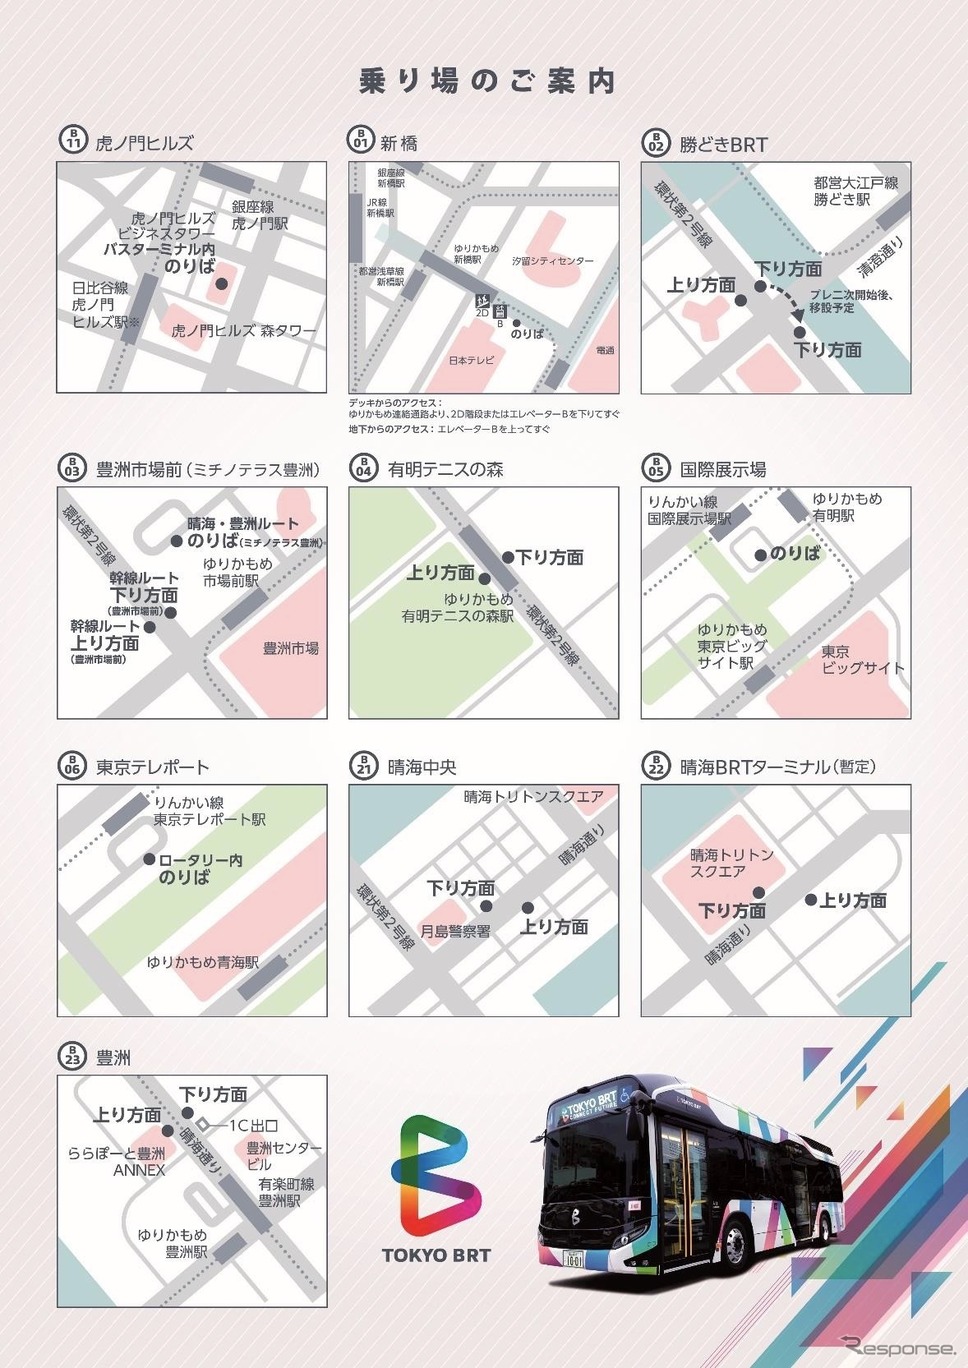 停留所案内《画像提供 東京BRT / 京成バス》